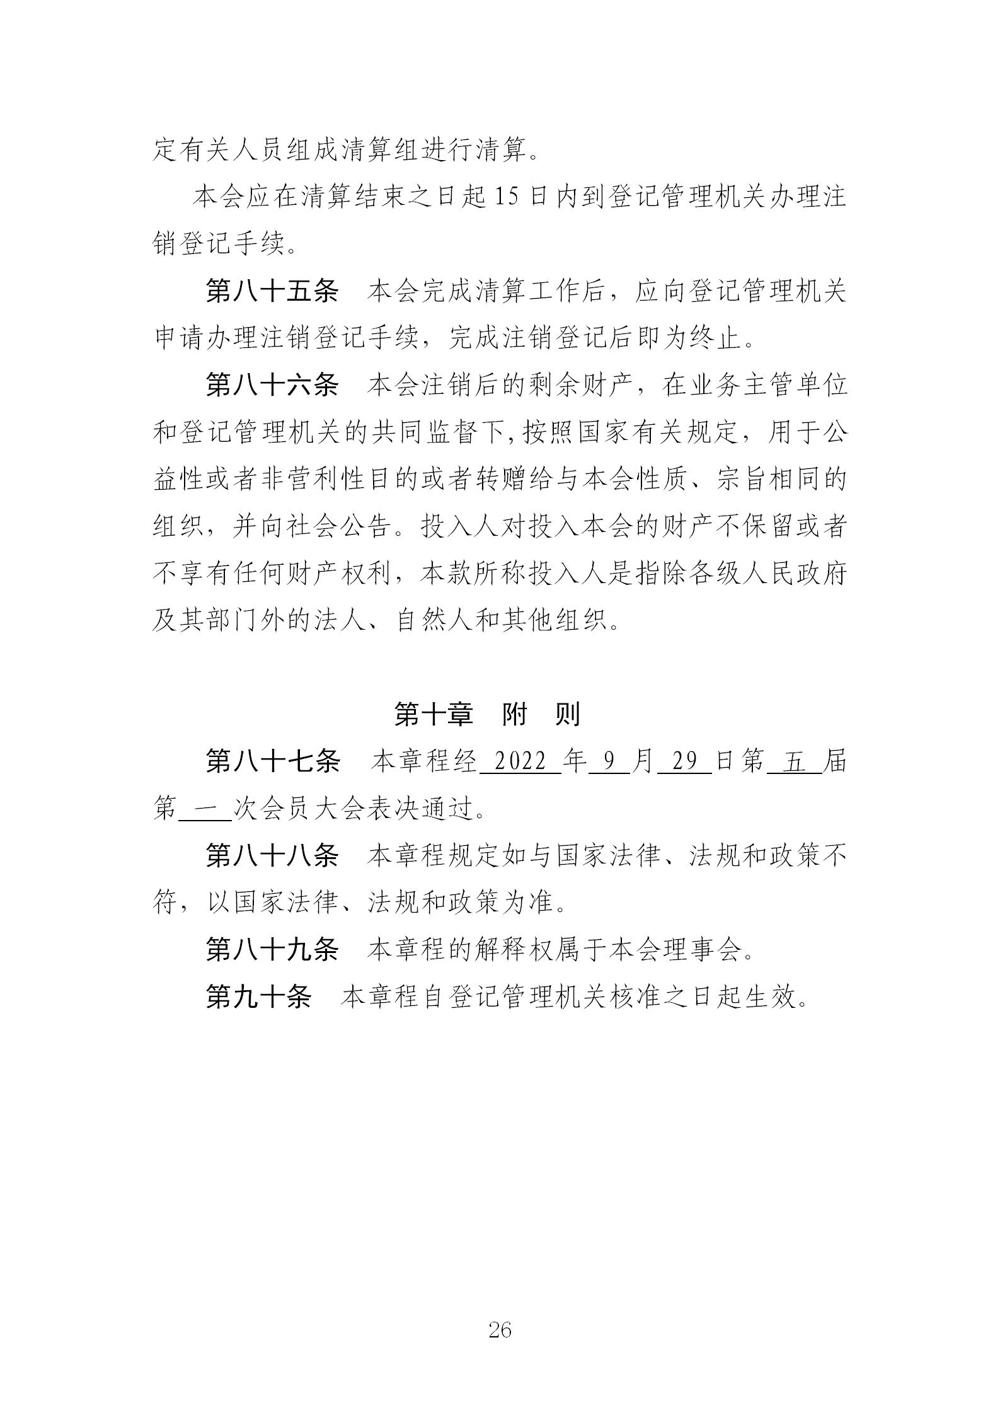 3-广东省羽毛球协会新章程20221107-根据民政厅修改意见修改_26